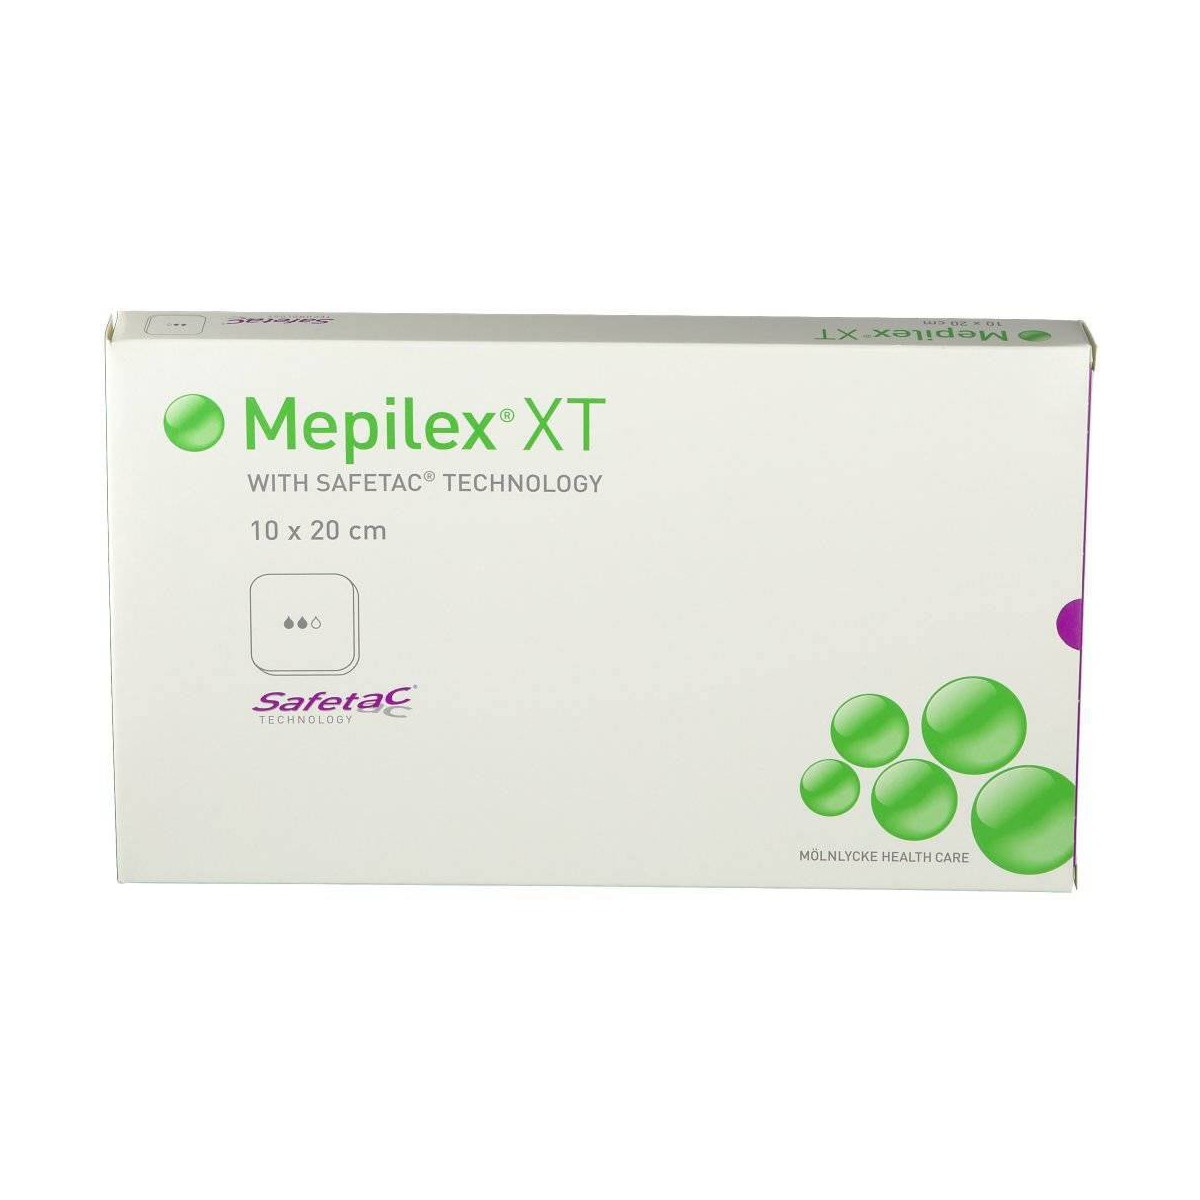 Mepilex XT 10 x 20 cm 3 apósitos